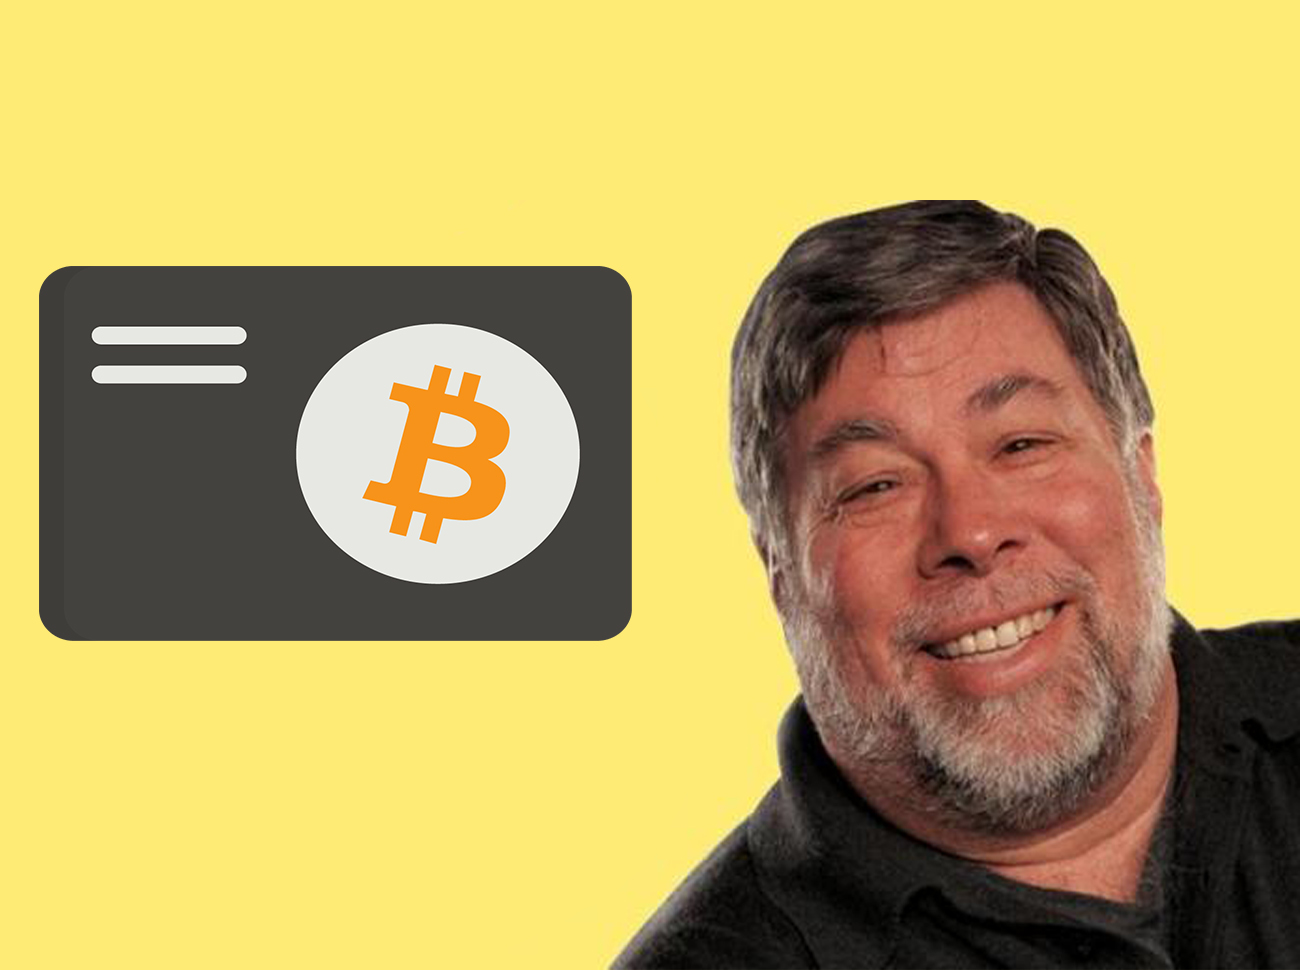 Steve Wozniak: Bitcoin matematiksel saflıktır, kopyalanması imkansız